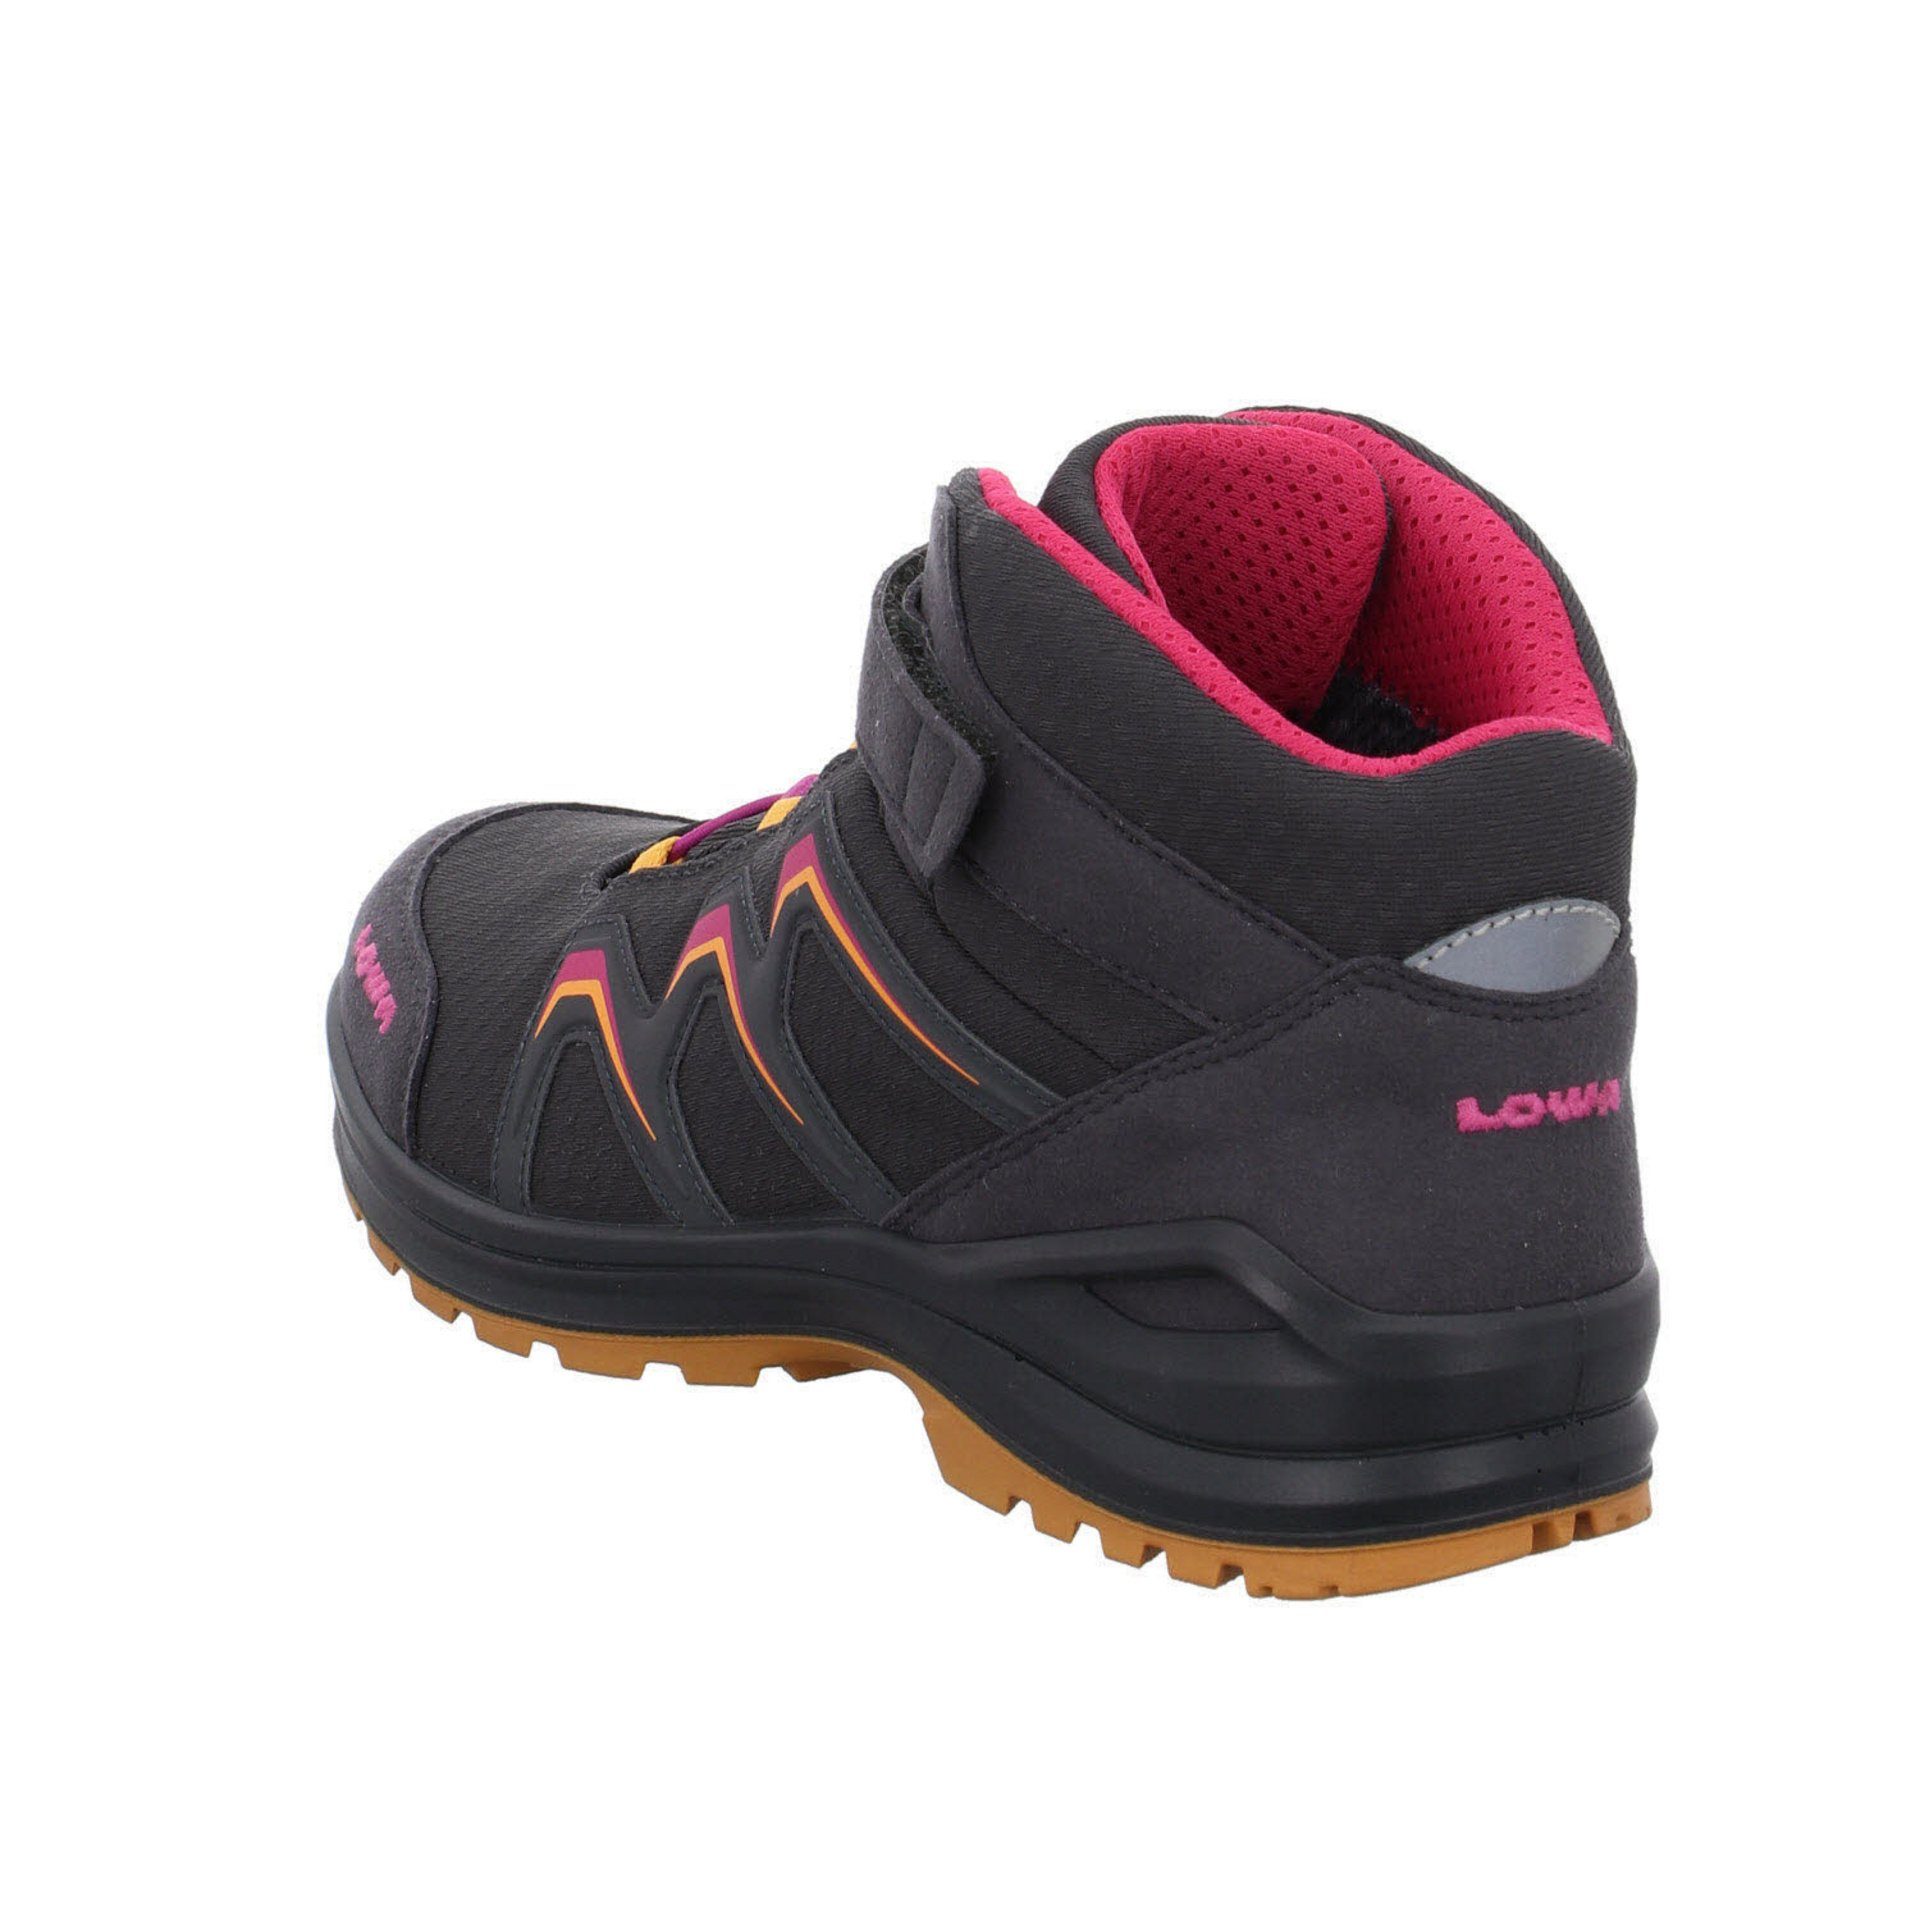 Jungen Warm Stiefel Boots Stiefel GTX Textil Maddox GRAPHIT/MANDARINE Lowa Schuhe